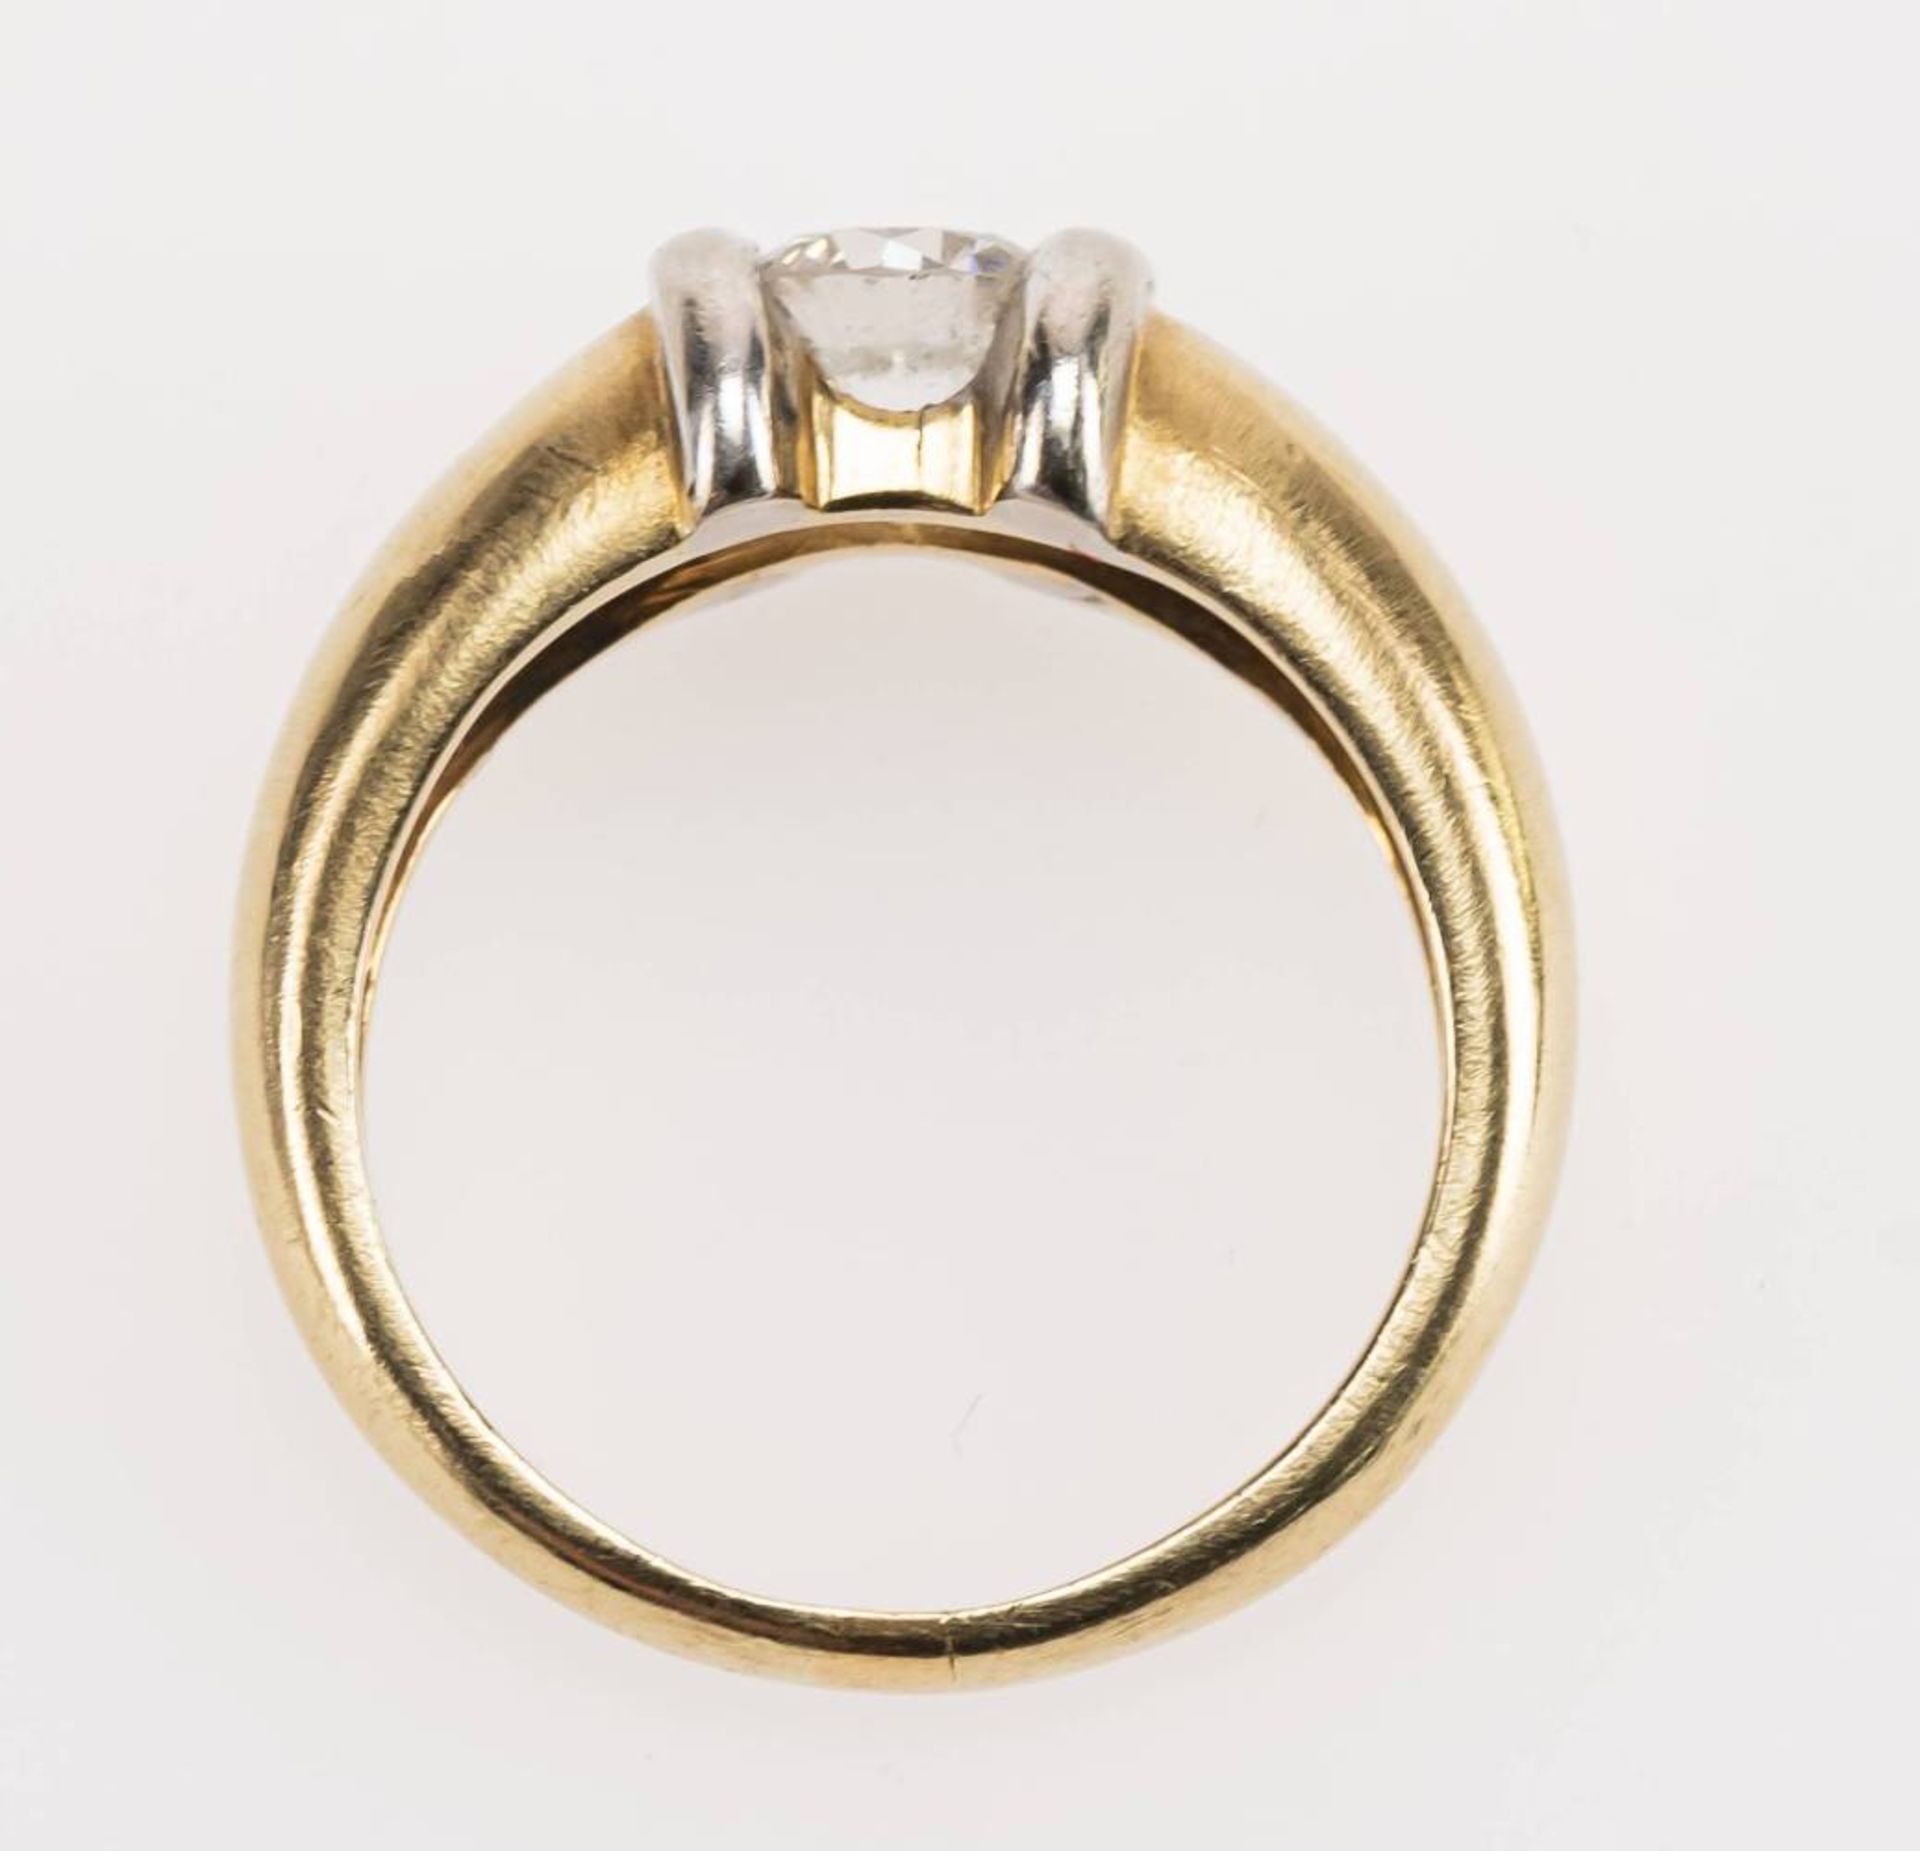 Brillant Ring, 585 Gold, bicolor, Brillant ca. 0,6ct, RW 54, ca. 6,99g. - Bild 3 aus 6